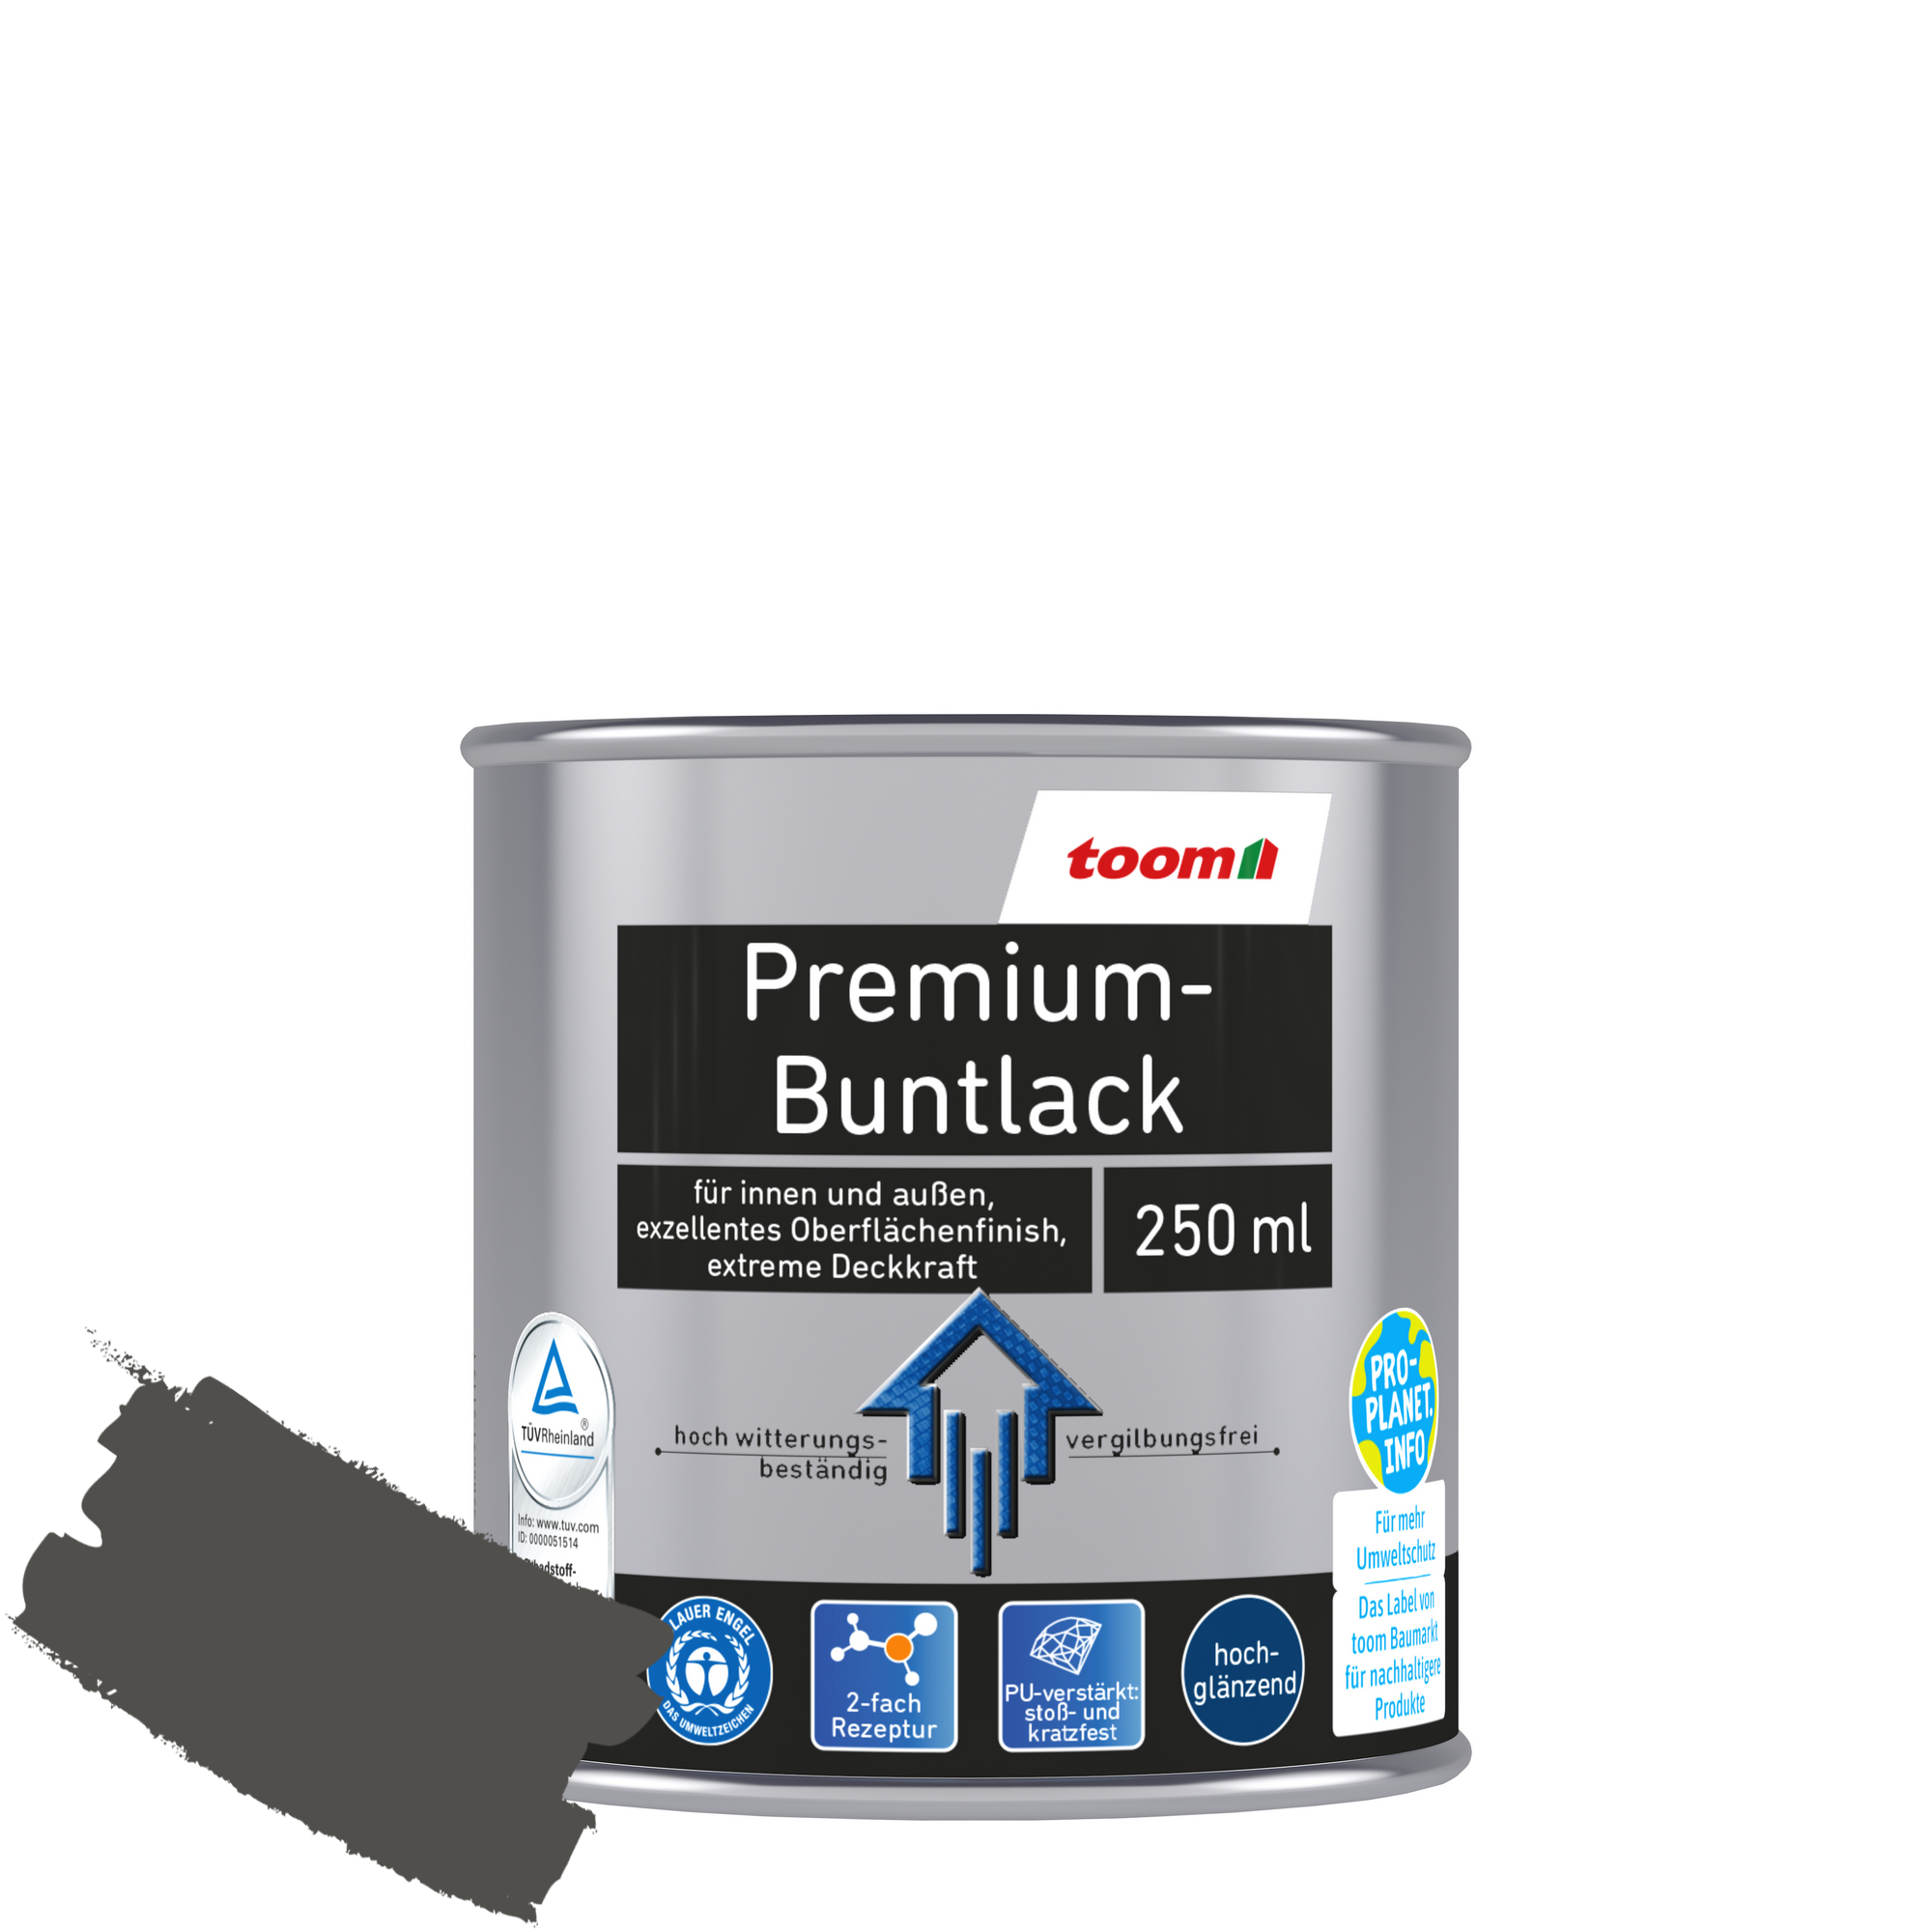 Premium-Buntlack silberfarben glänzend 250 ml + product picture